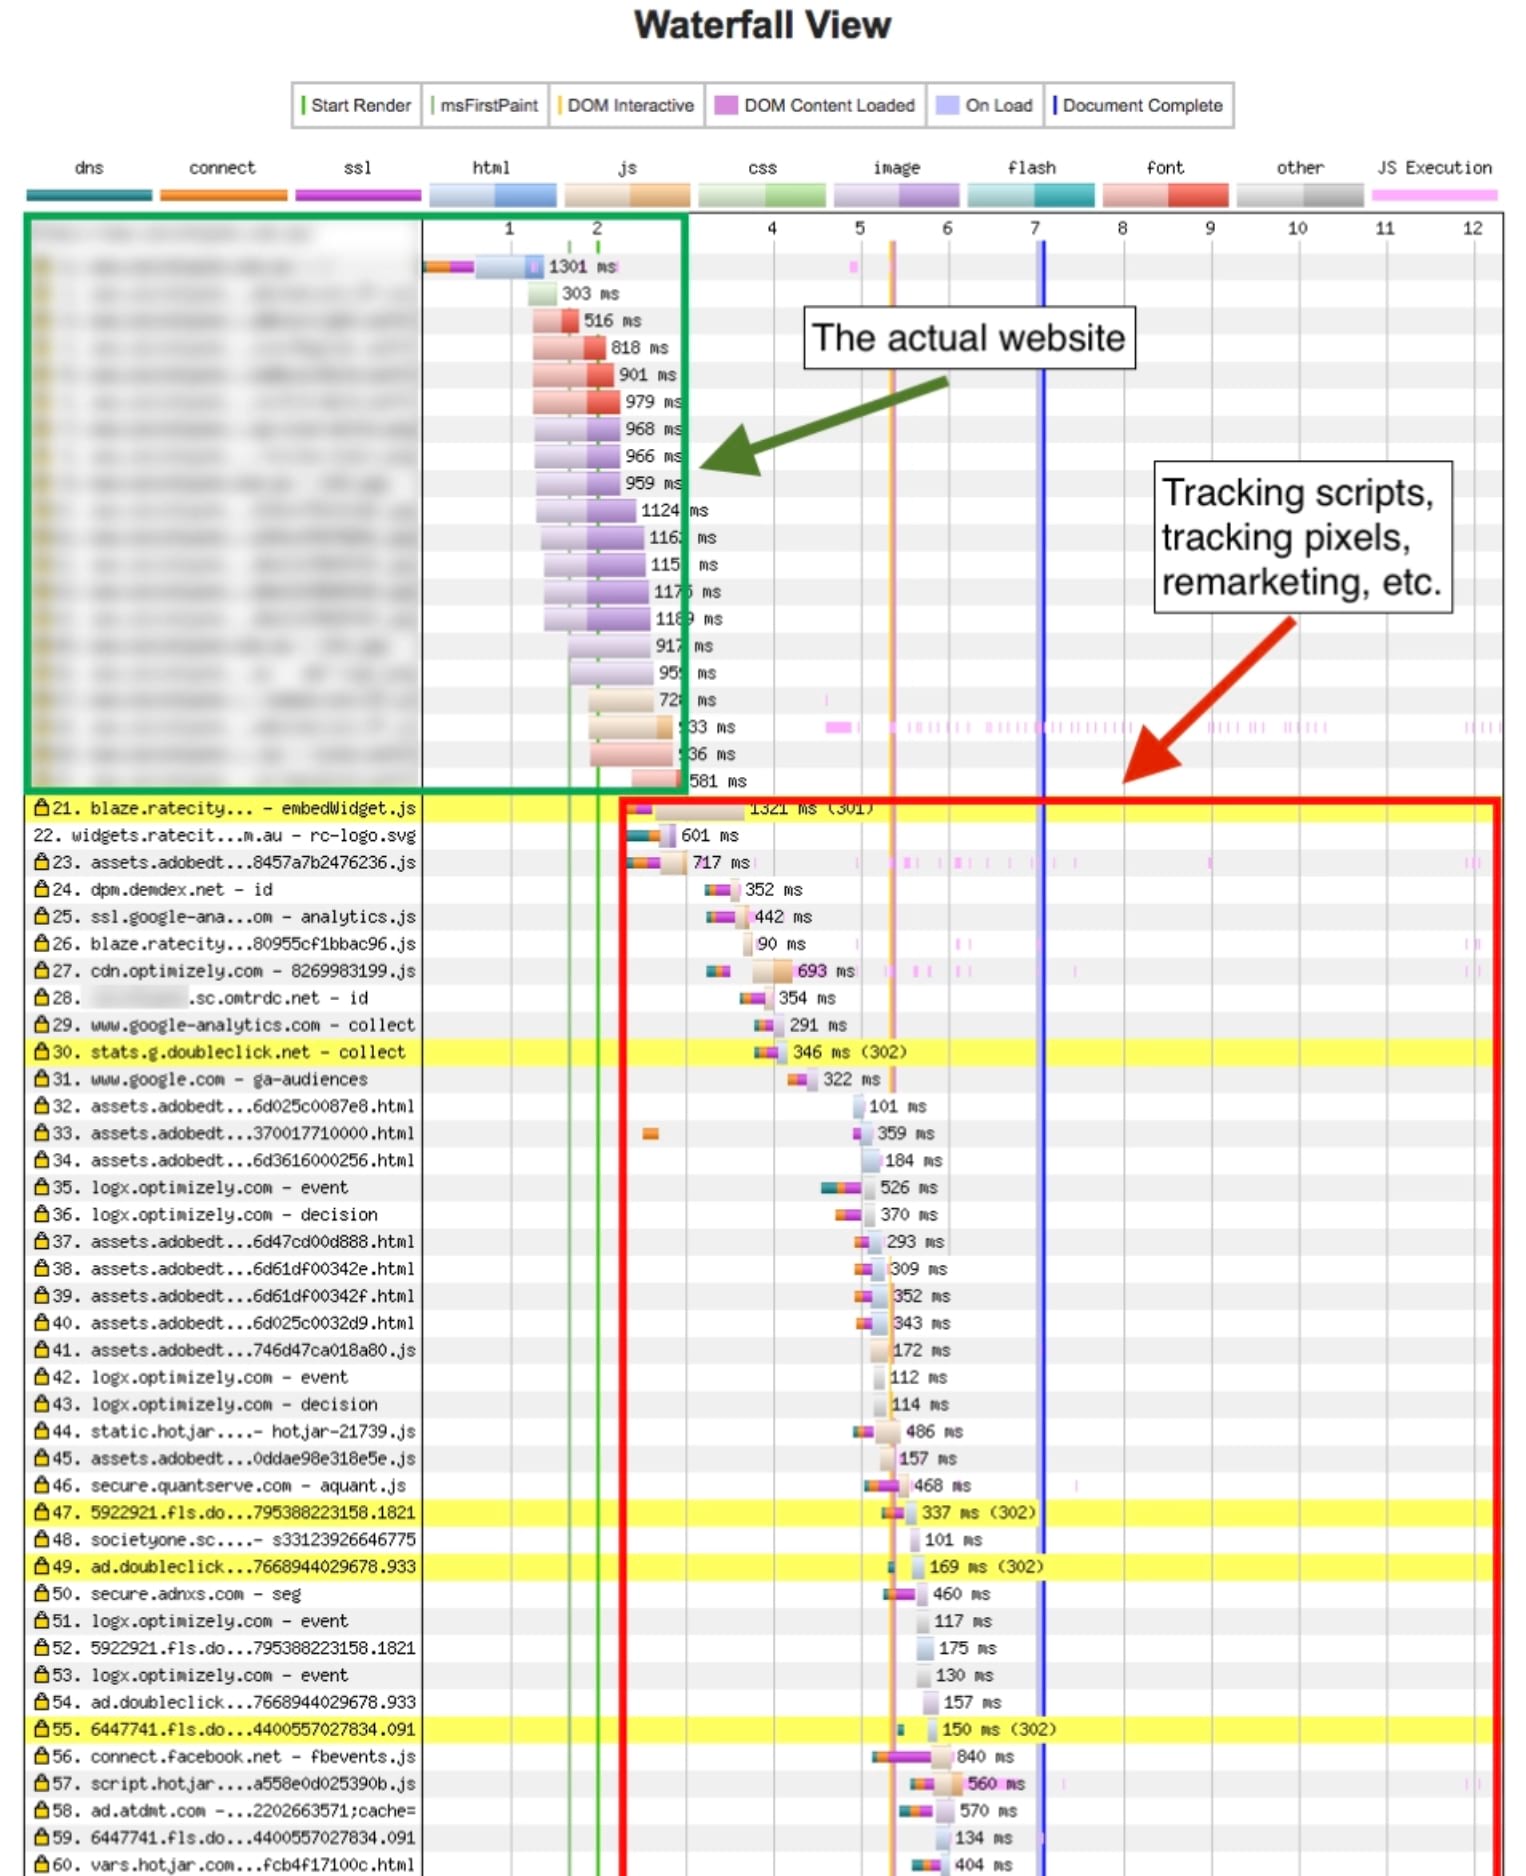 Visualização em hierarquia do teste da página mostrando um
site real x o tempo gasto carregando scripts de acompanhamento